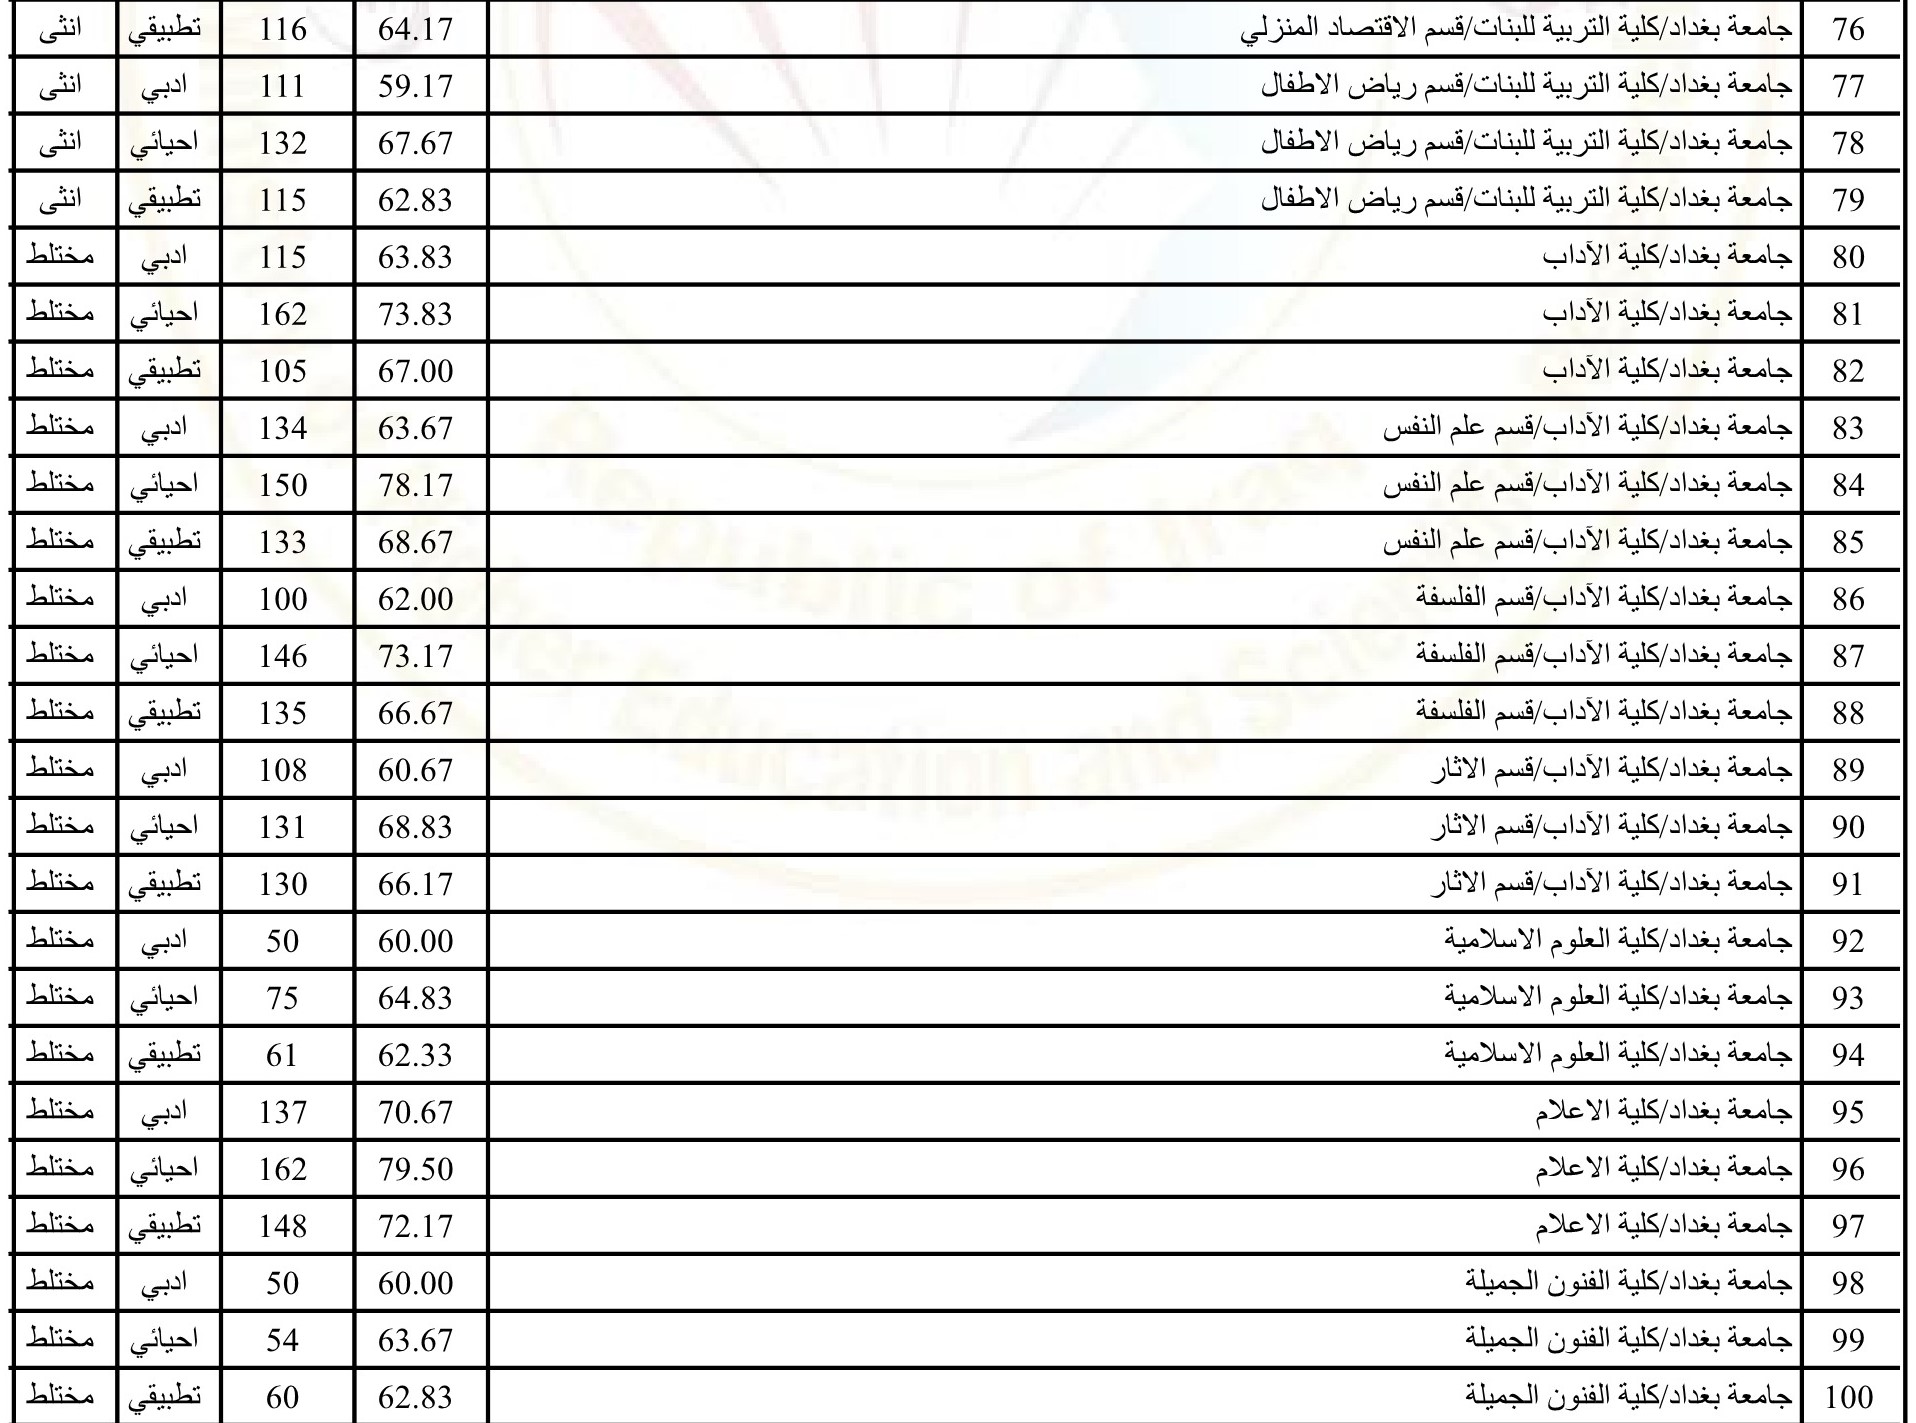 الحدود الدنيا 2022 2 Copy - Now معدلات القبول في الجامعات العراقية 2022 موقع وزارة التربية العراق